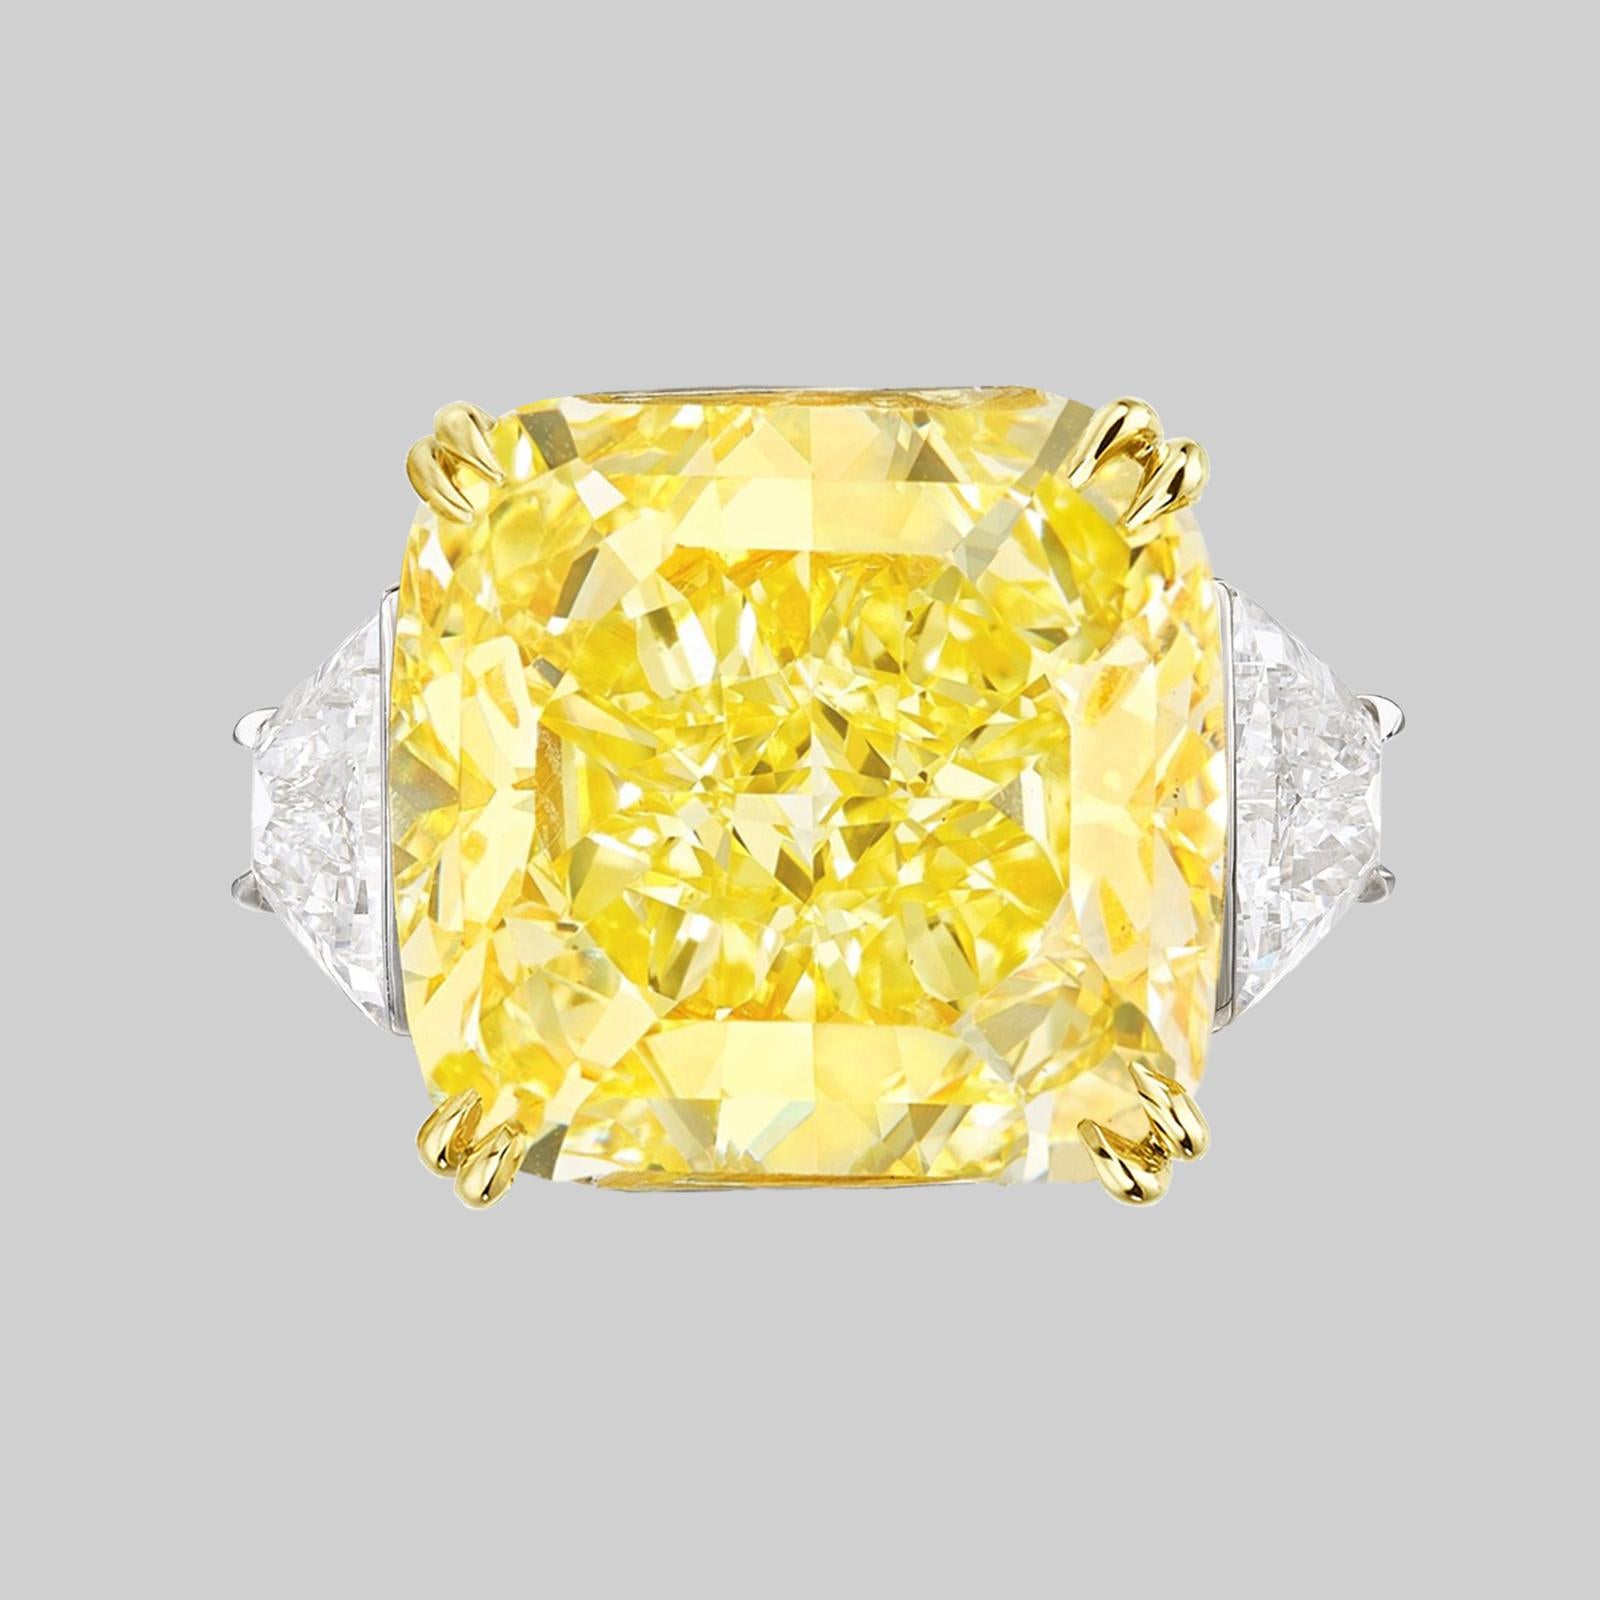 Magnifique bague à diamant radiant  Speechless 23 Carats Fancy VIVID Yellow Cushion Cut VS2 in clarity. Certifié par le GIA, serti de 2 carats de deux impressionnants diamants trapézoïdaux sertis dans du platine et de l'or jaune 18 carats.

Au